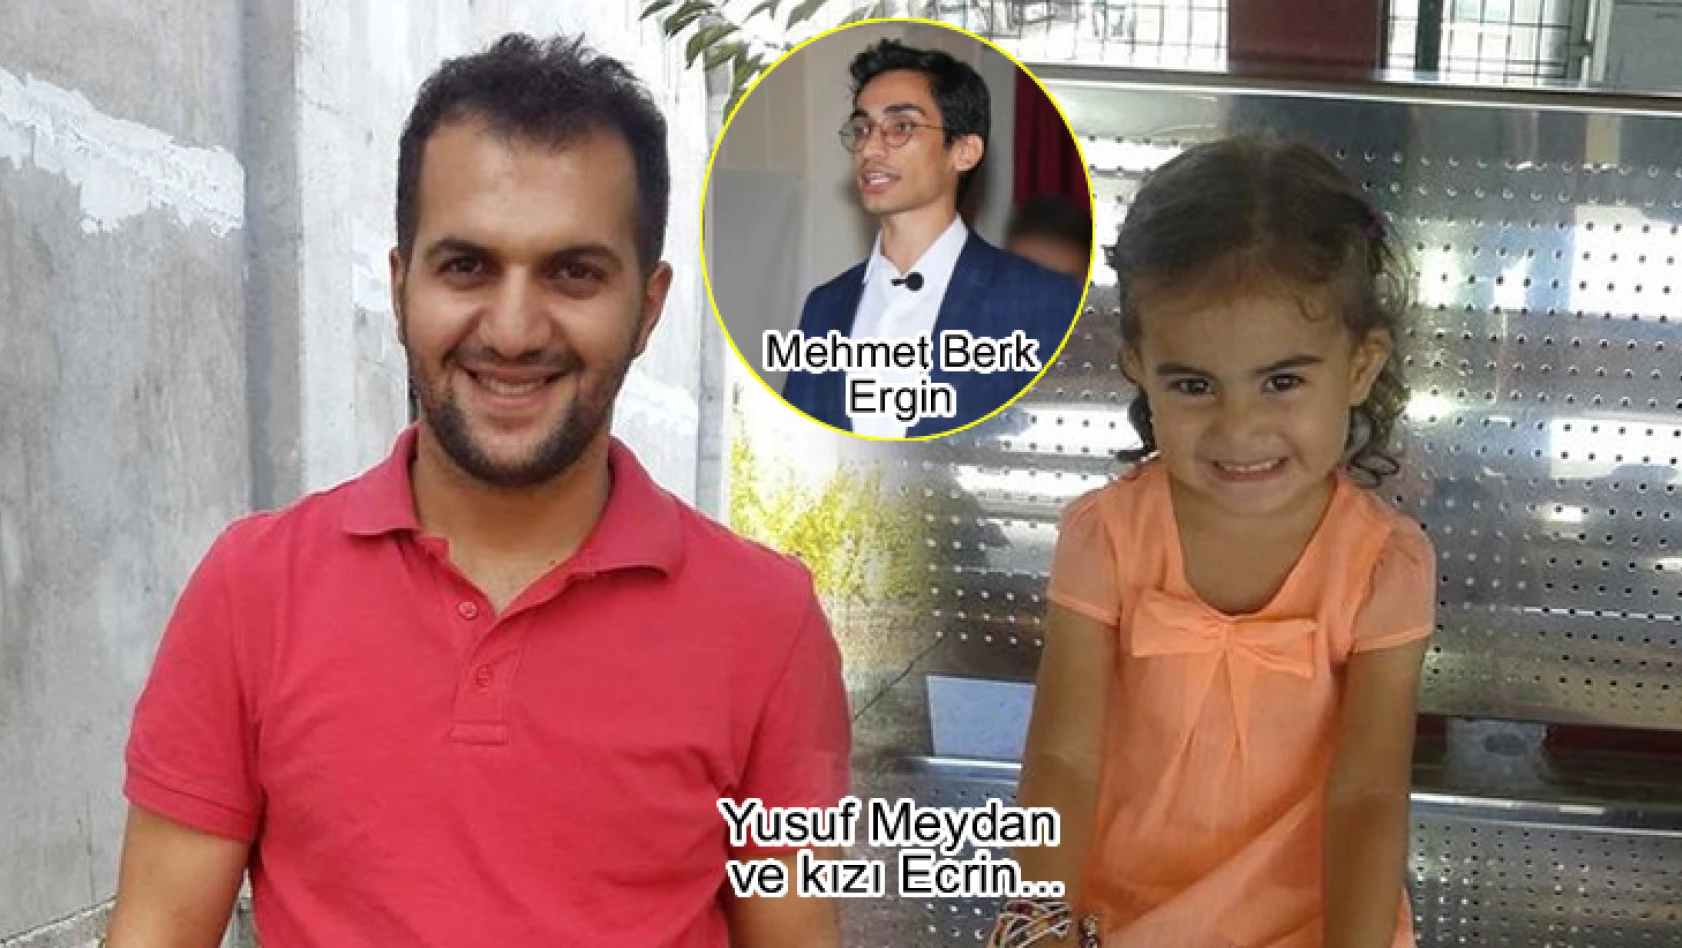 İstiklal Caddesi saldırısında yaşamını yitiren Yusuf Meydan, Twitter fenomeni Mehmet Berk Ergin'in akrabası çıktı